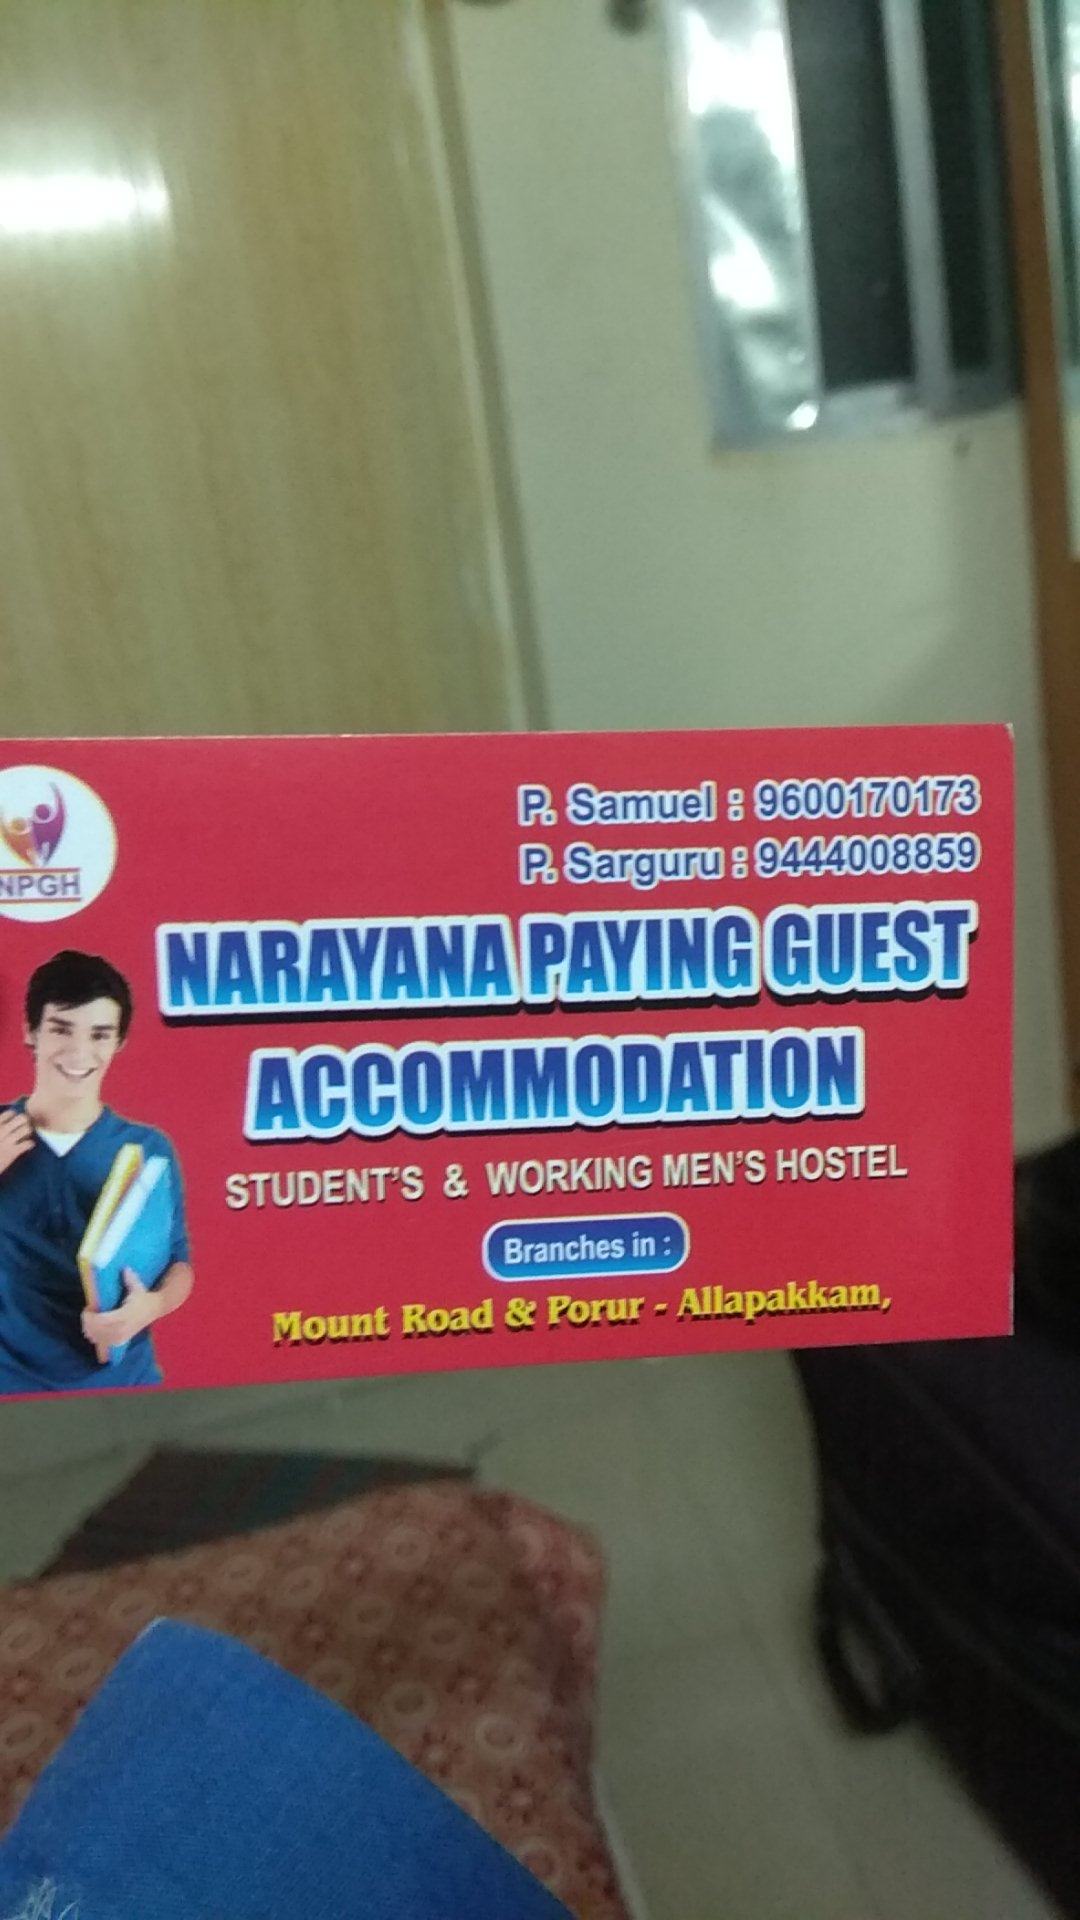 Narayana paying Guest Accommodation